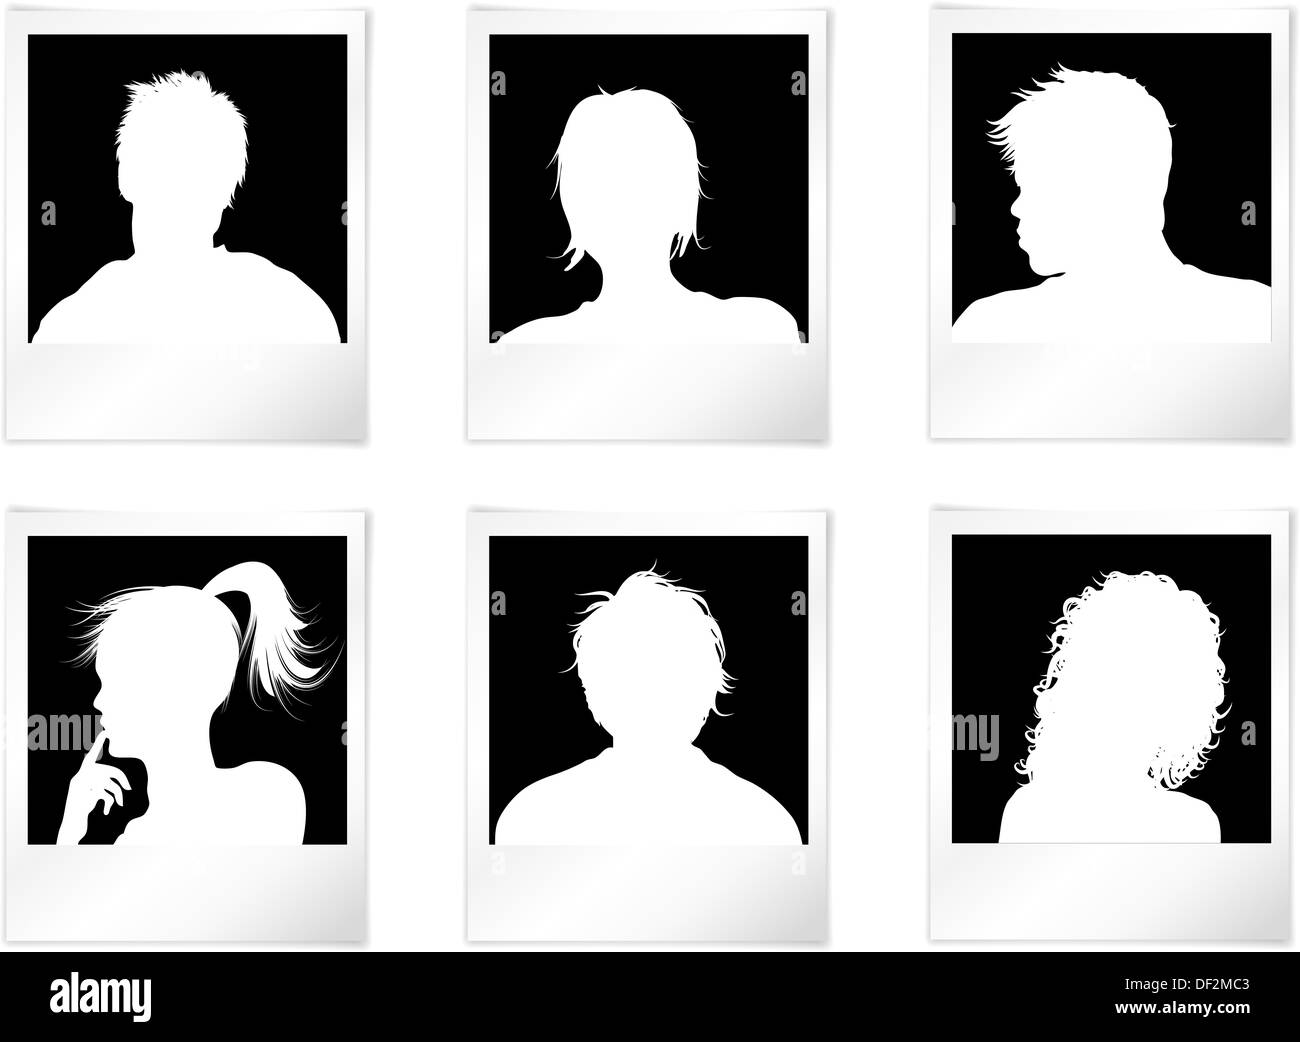 Menschen-Avatare im Bilderrahmen mit Schatten Stockfoto